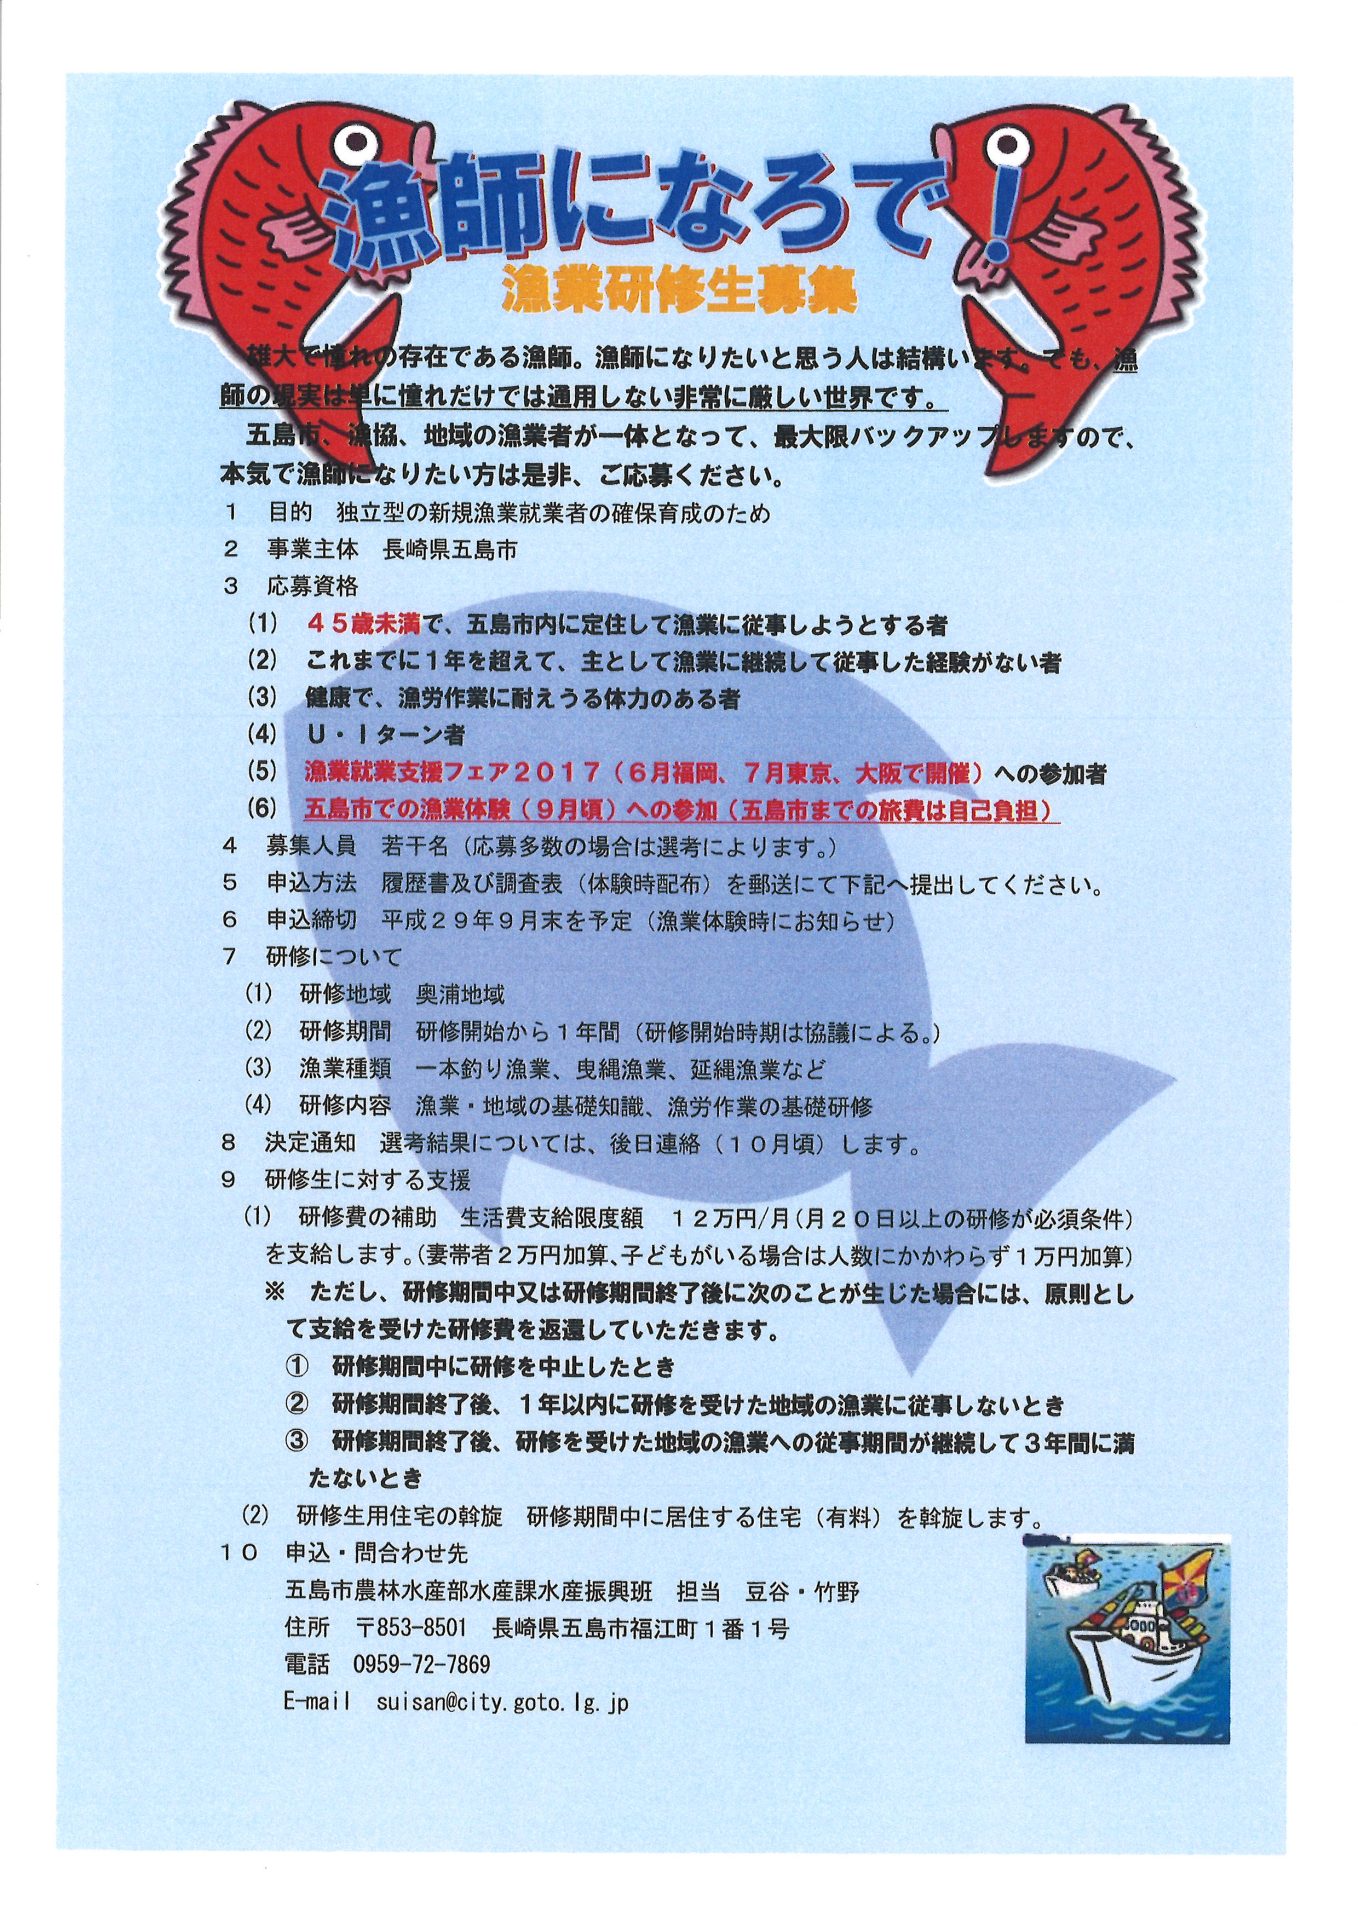 【長崎県】五島市 漁業研修生を募集 | 移住関連イベント情報